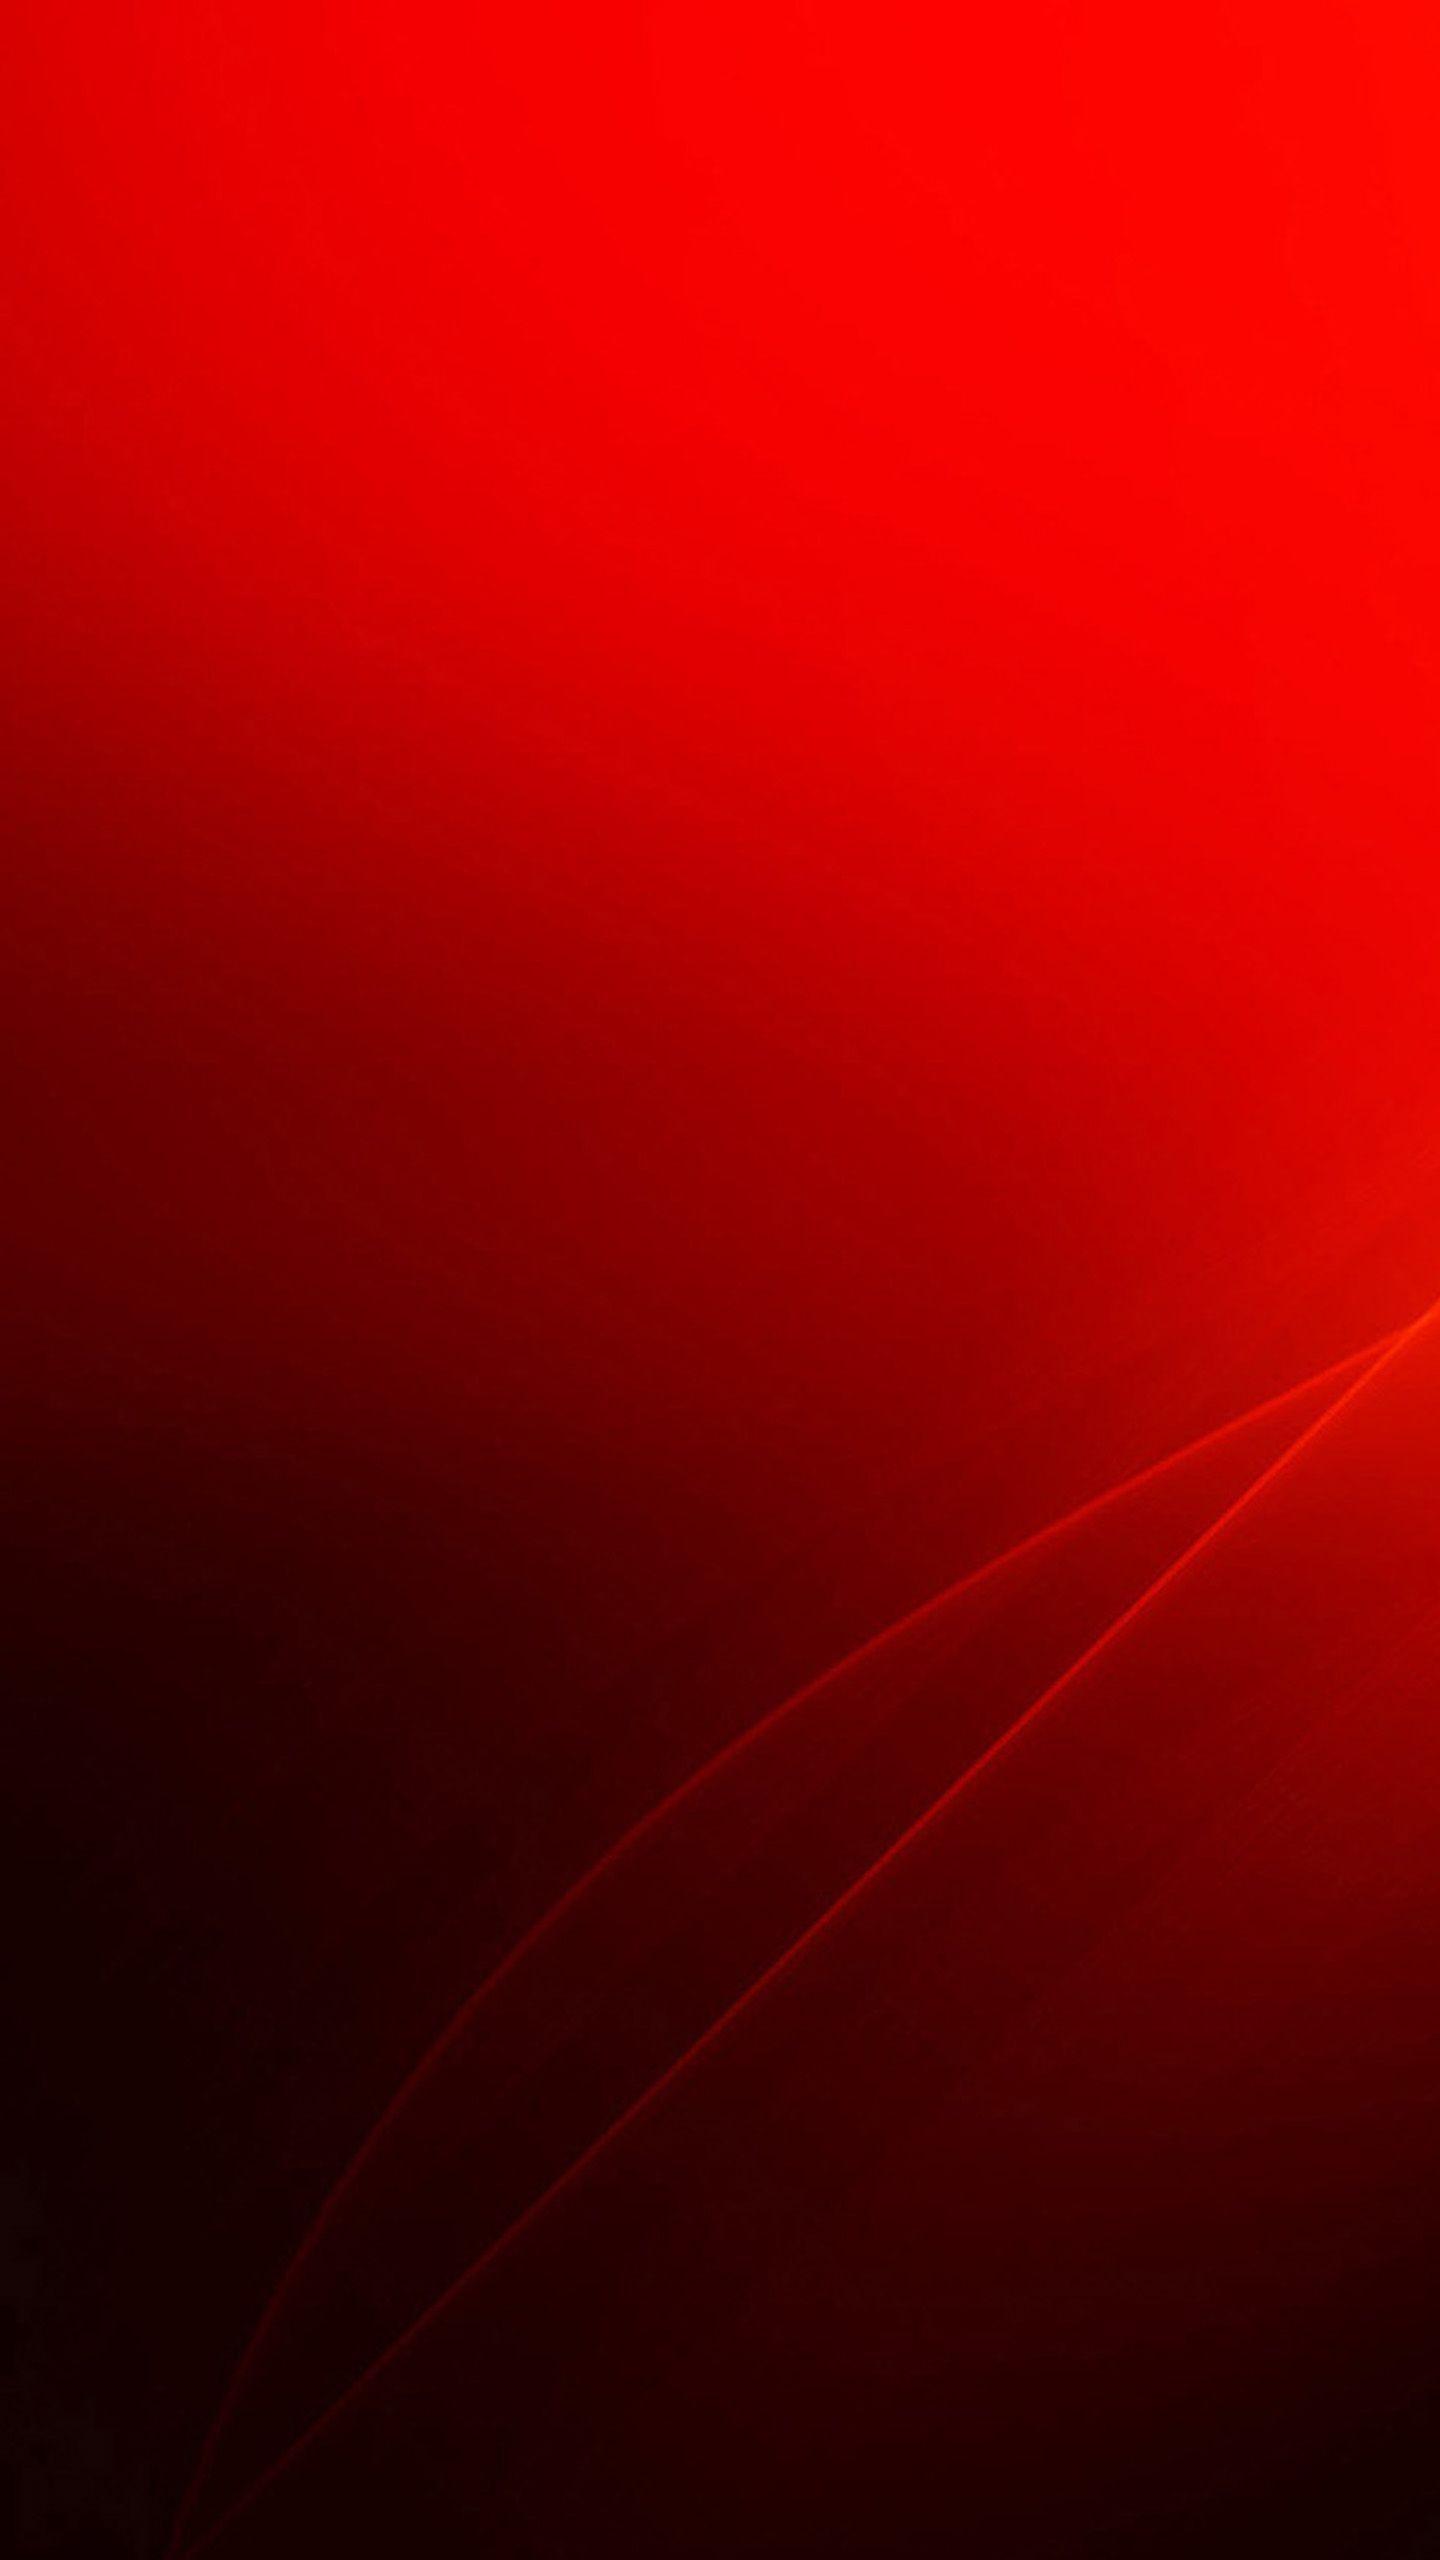 Hình nền Red Abstract HD Phone Wallpapers mang đến những họa tiết lạ mắt và màu sắc tươi sáng, đem lại cảm giác sống động và mới mẻ cho điện thoại của bạn. Xem ngay để tìm kiếm ý tưởng cho màn hình của bạn!